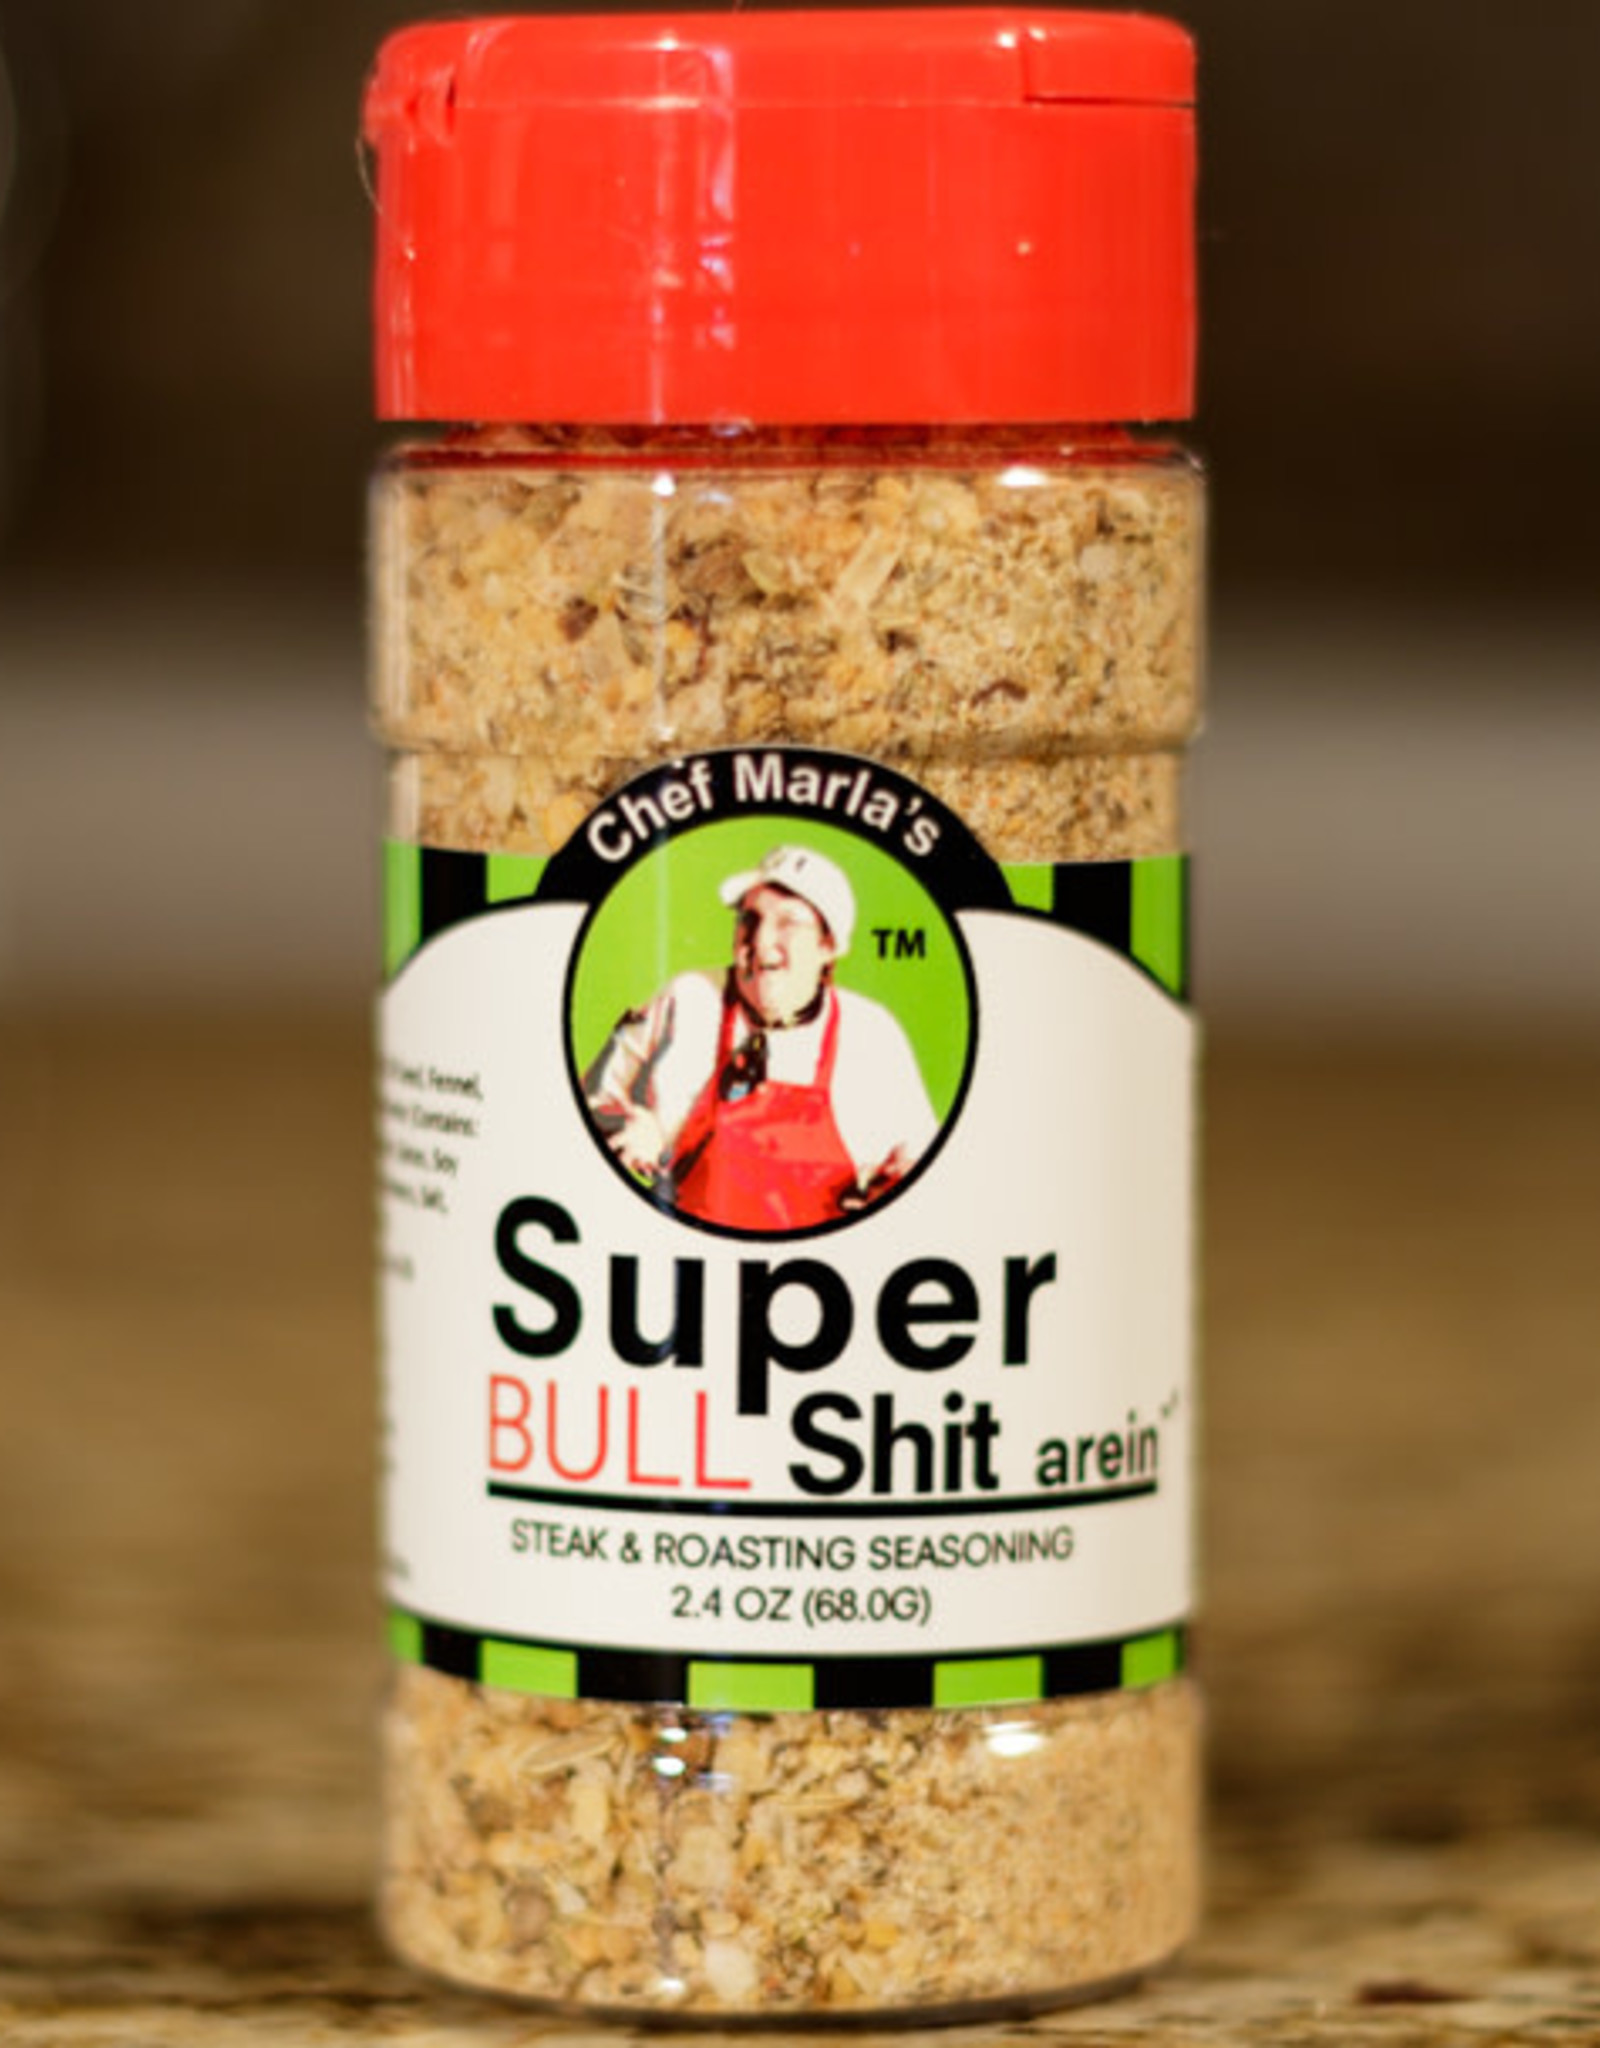 Super Bull Shit-arein 2.4 OZ